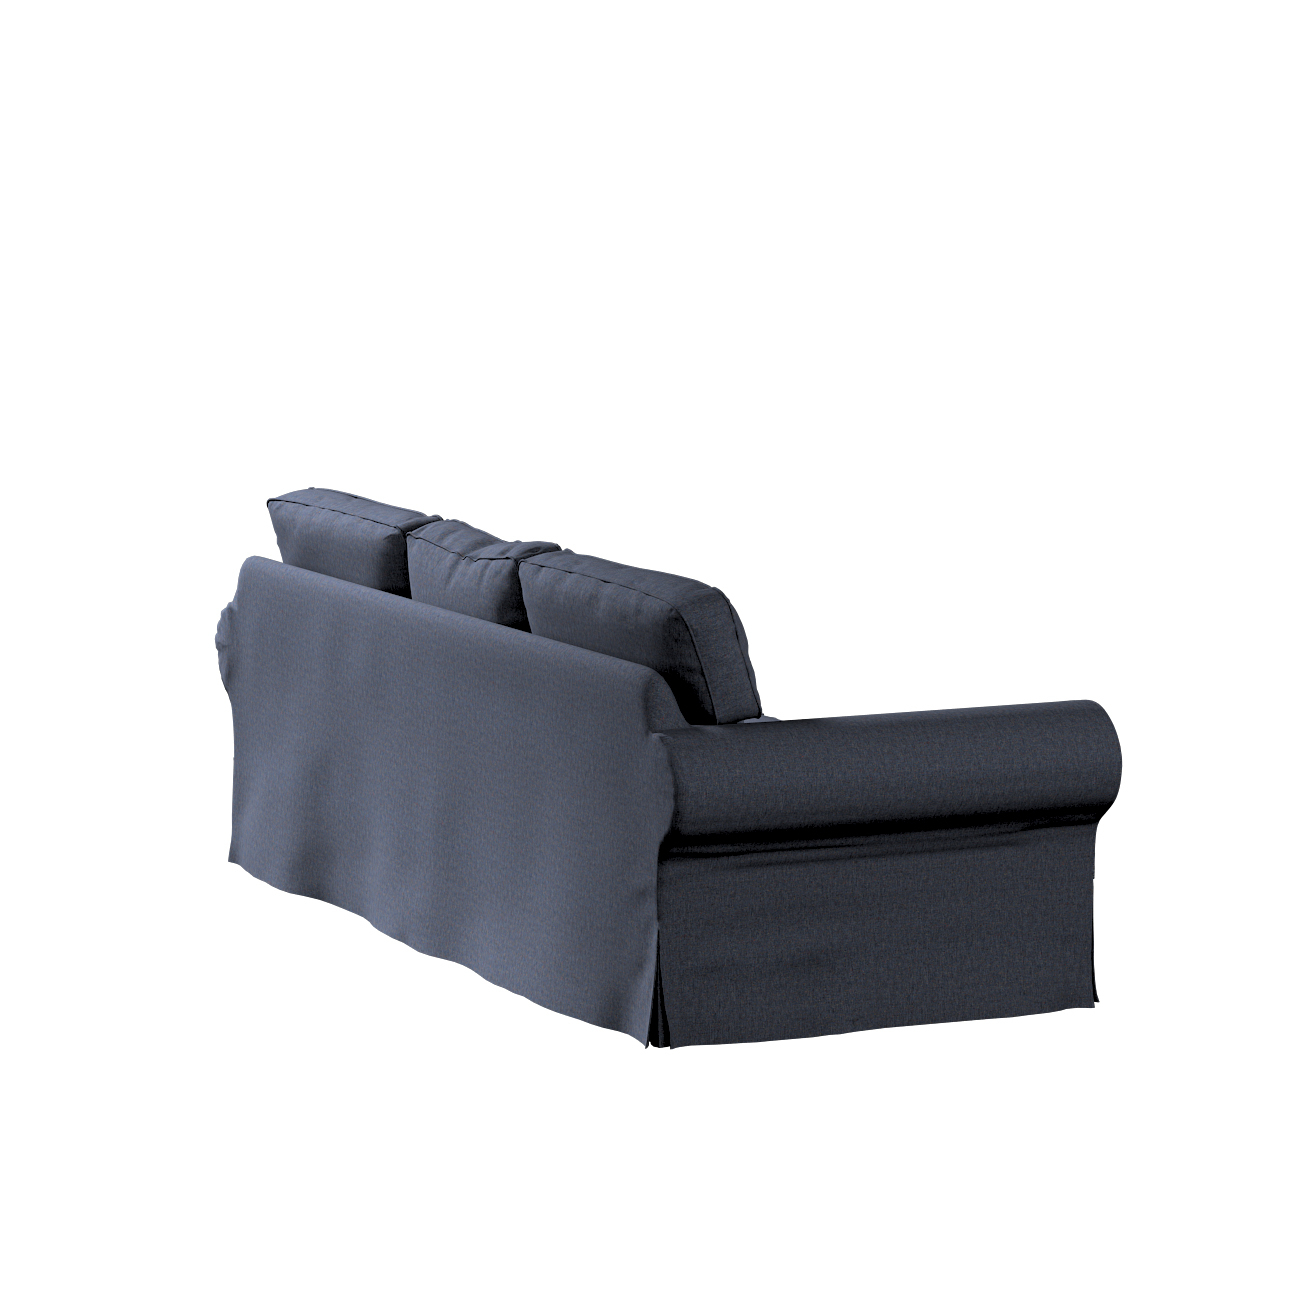 Bezug für Ektorp 3-Sitzer Sofa nicht ausklappbar, dunkelblau, Sofabezug für günstig online kaufen